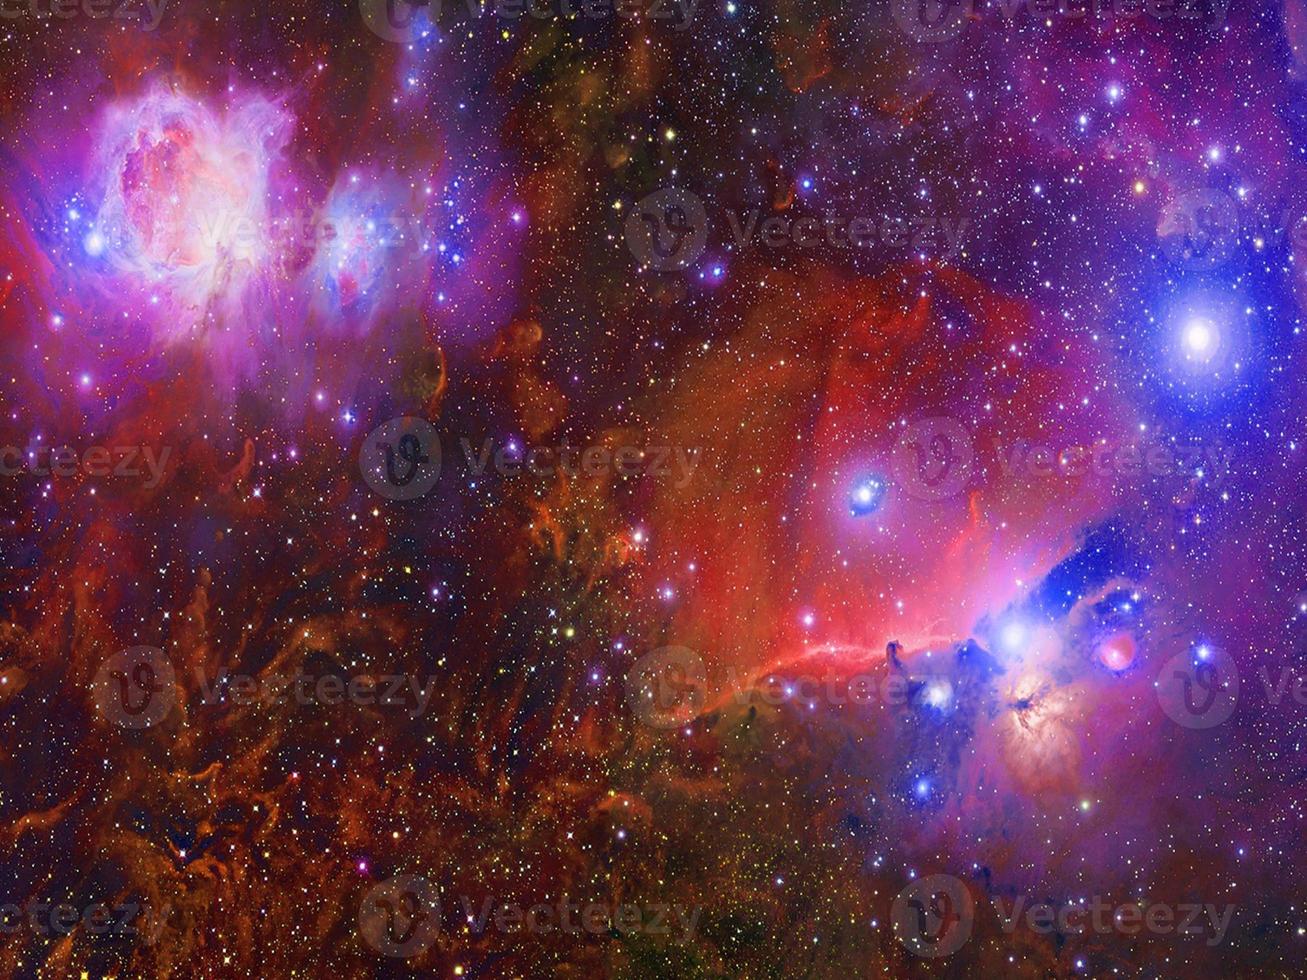 infinito cosmos hermoso fondo rojo oscuro y azul claro con nebulosa, cúmulo de estrellas en el espacio exterior. belleza del universo infinito lleno de estrellas arte cósmico, papel tapiz de ciencia ficción foto